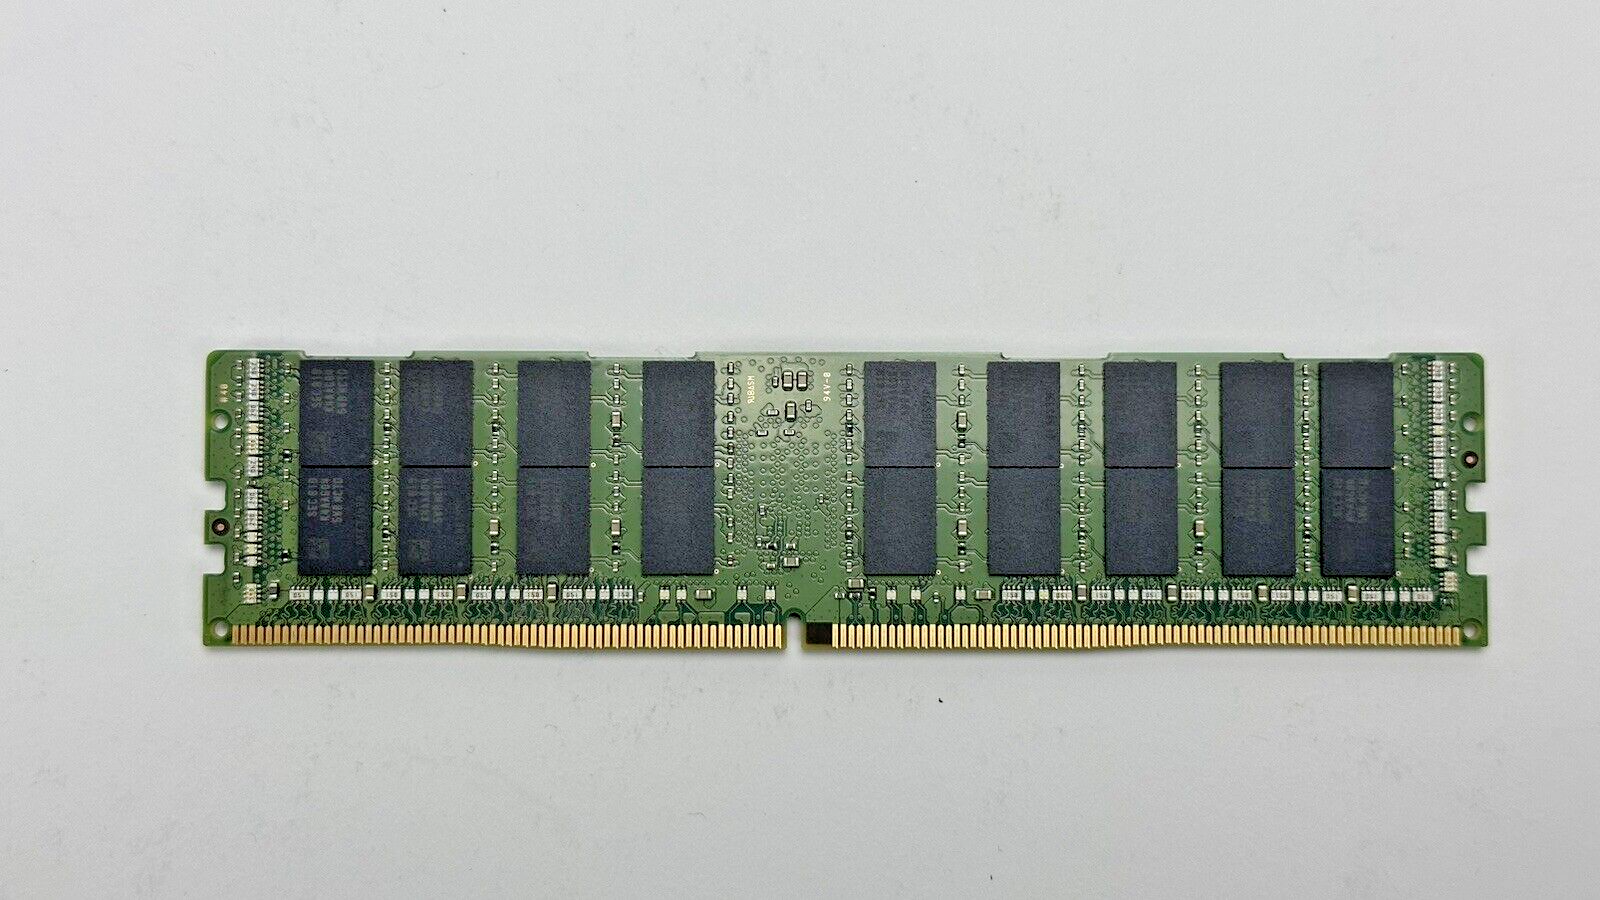 1024GB 1TB Lenovo 7X77A01305 16x 64GB DDR4 ECC RAM Memory 01DE975 PC4-2666V